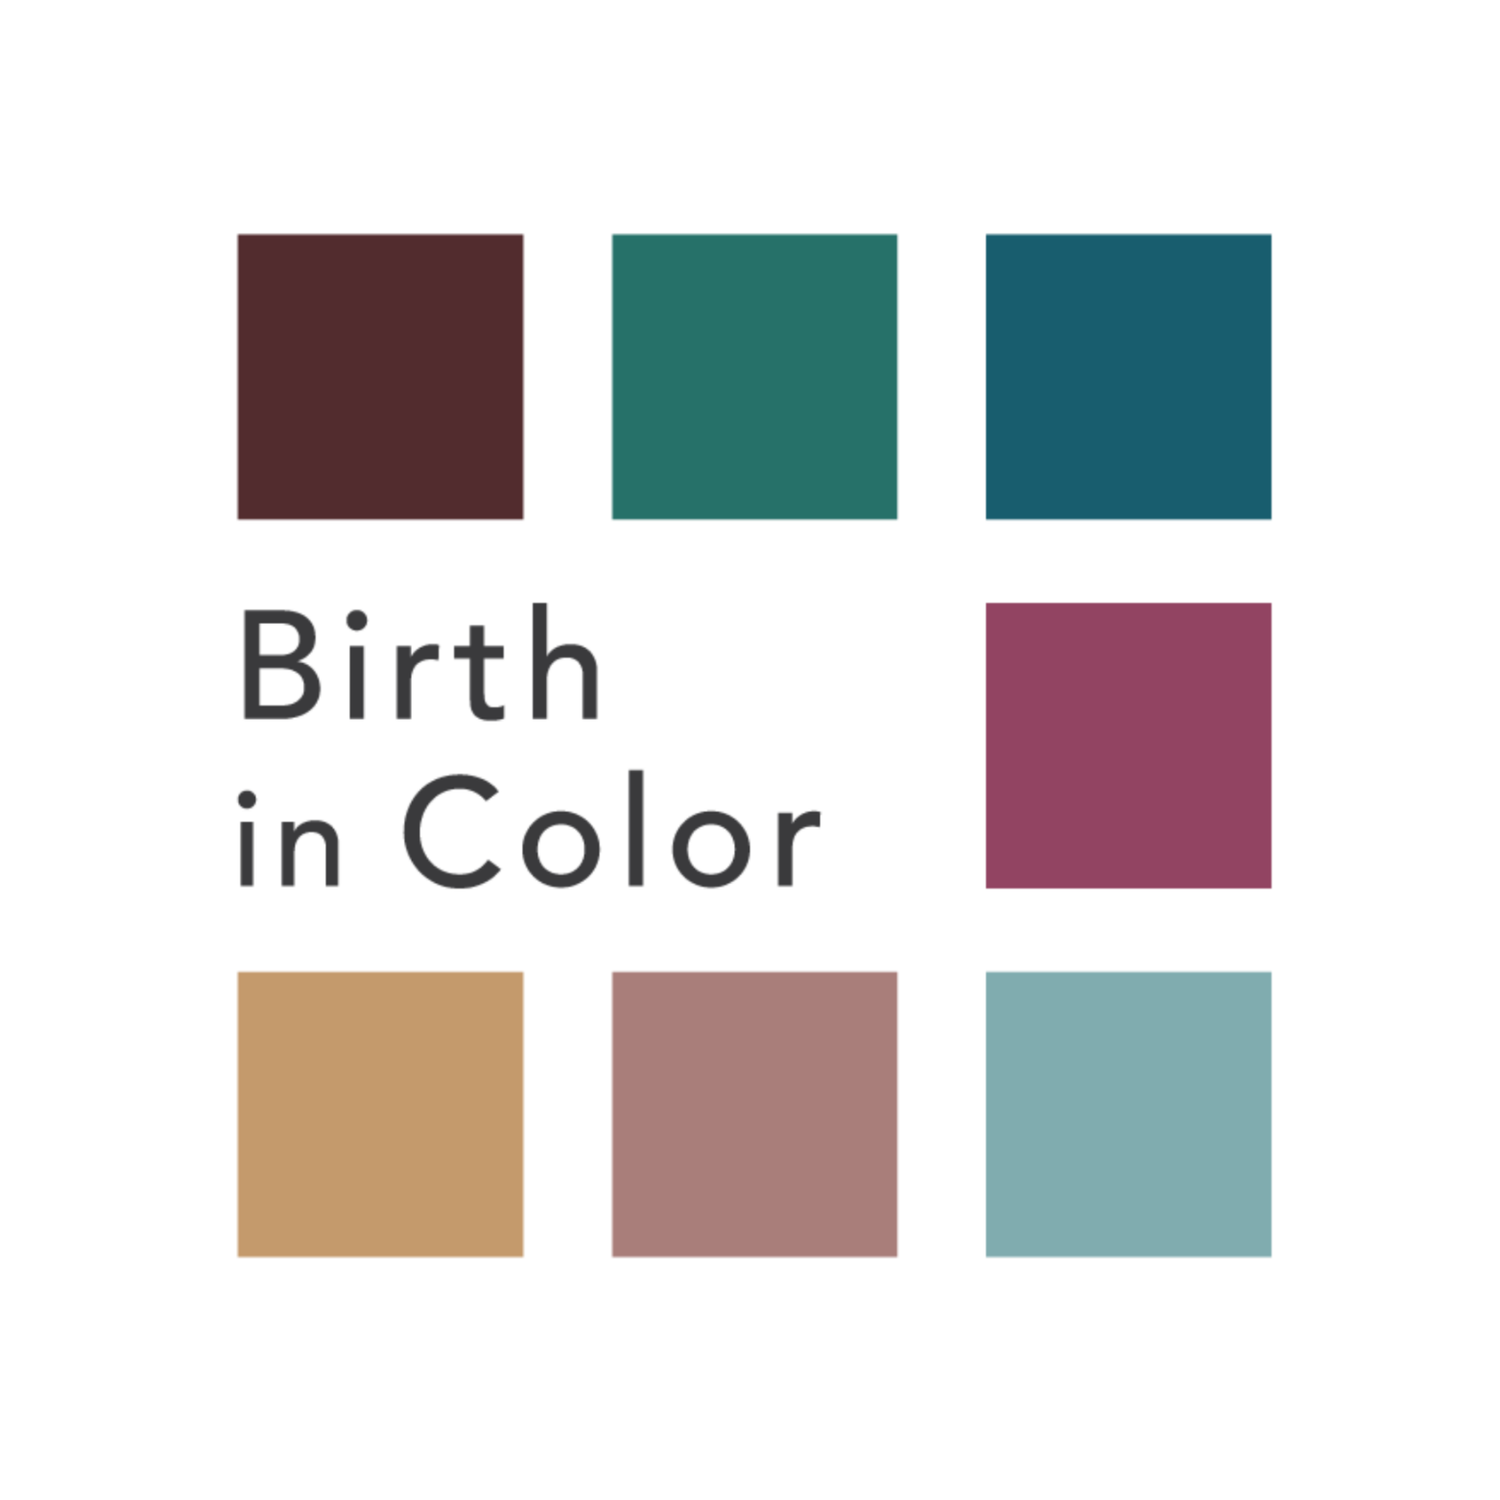 Birth in Color